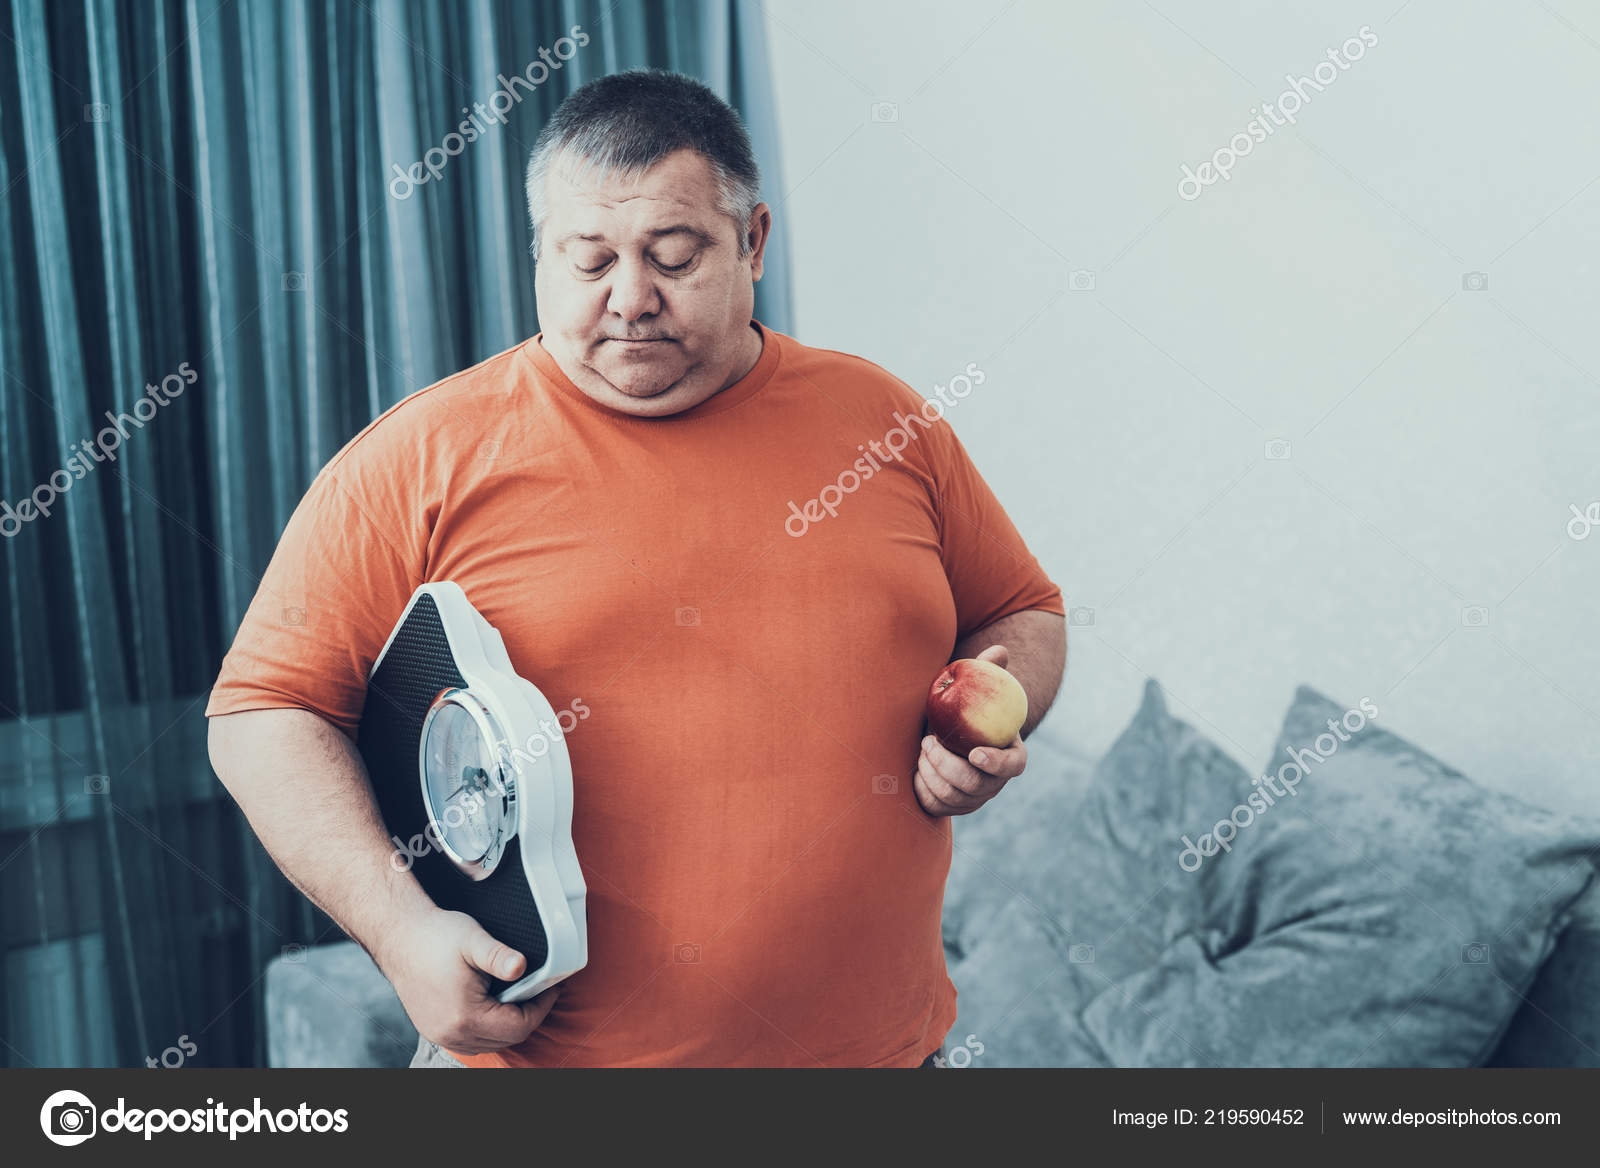 Sad fat man